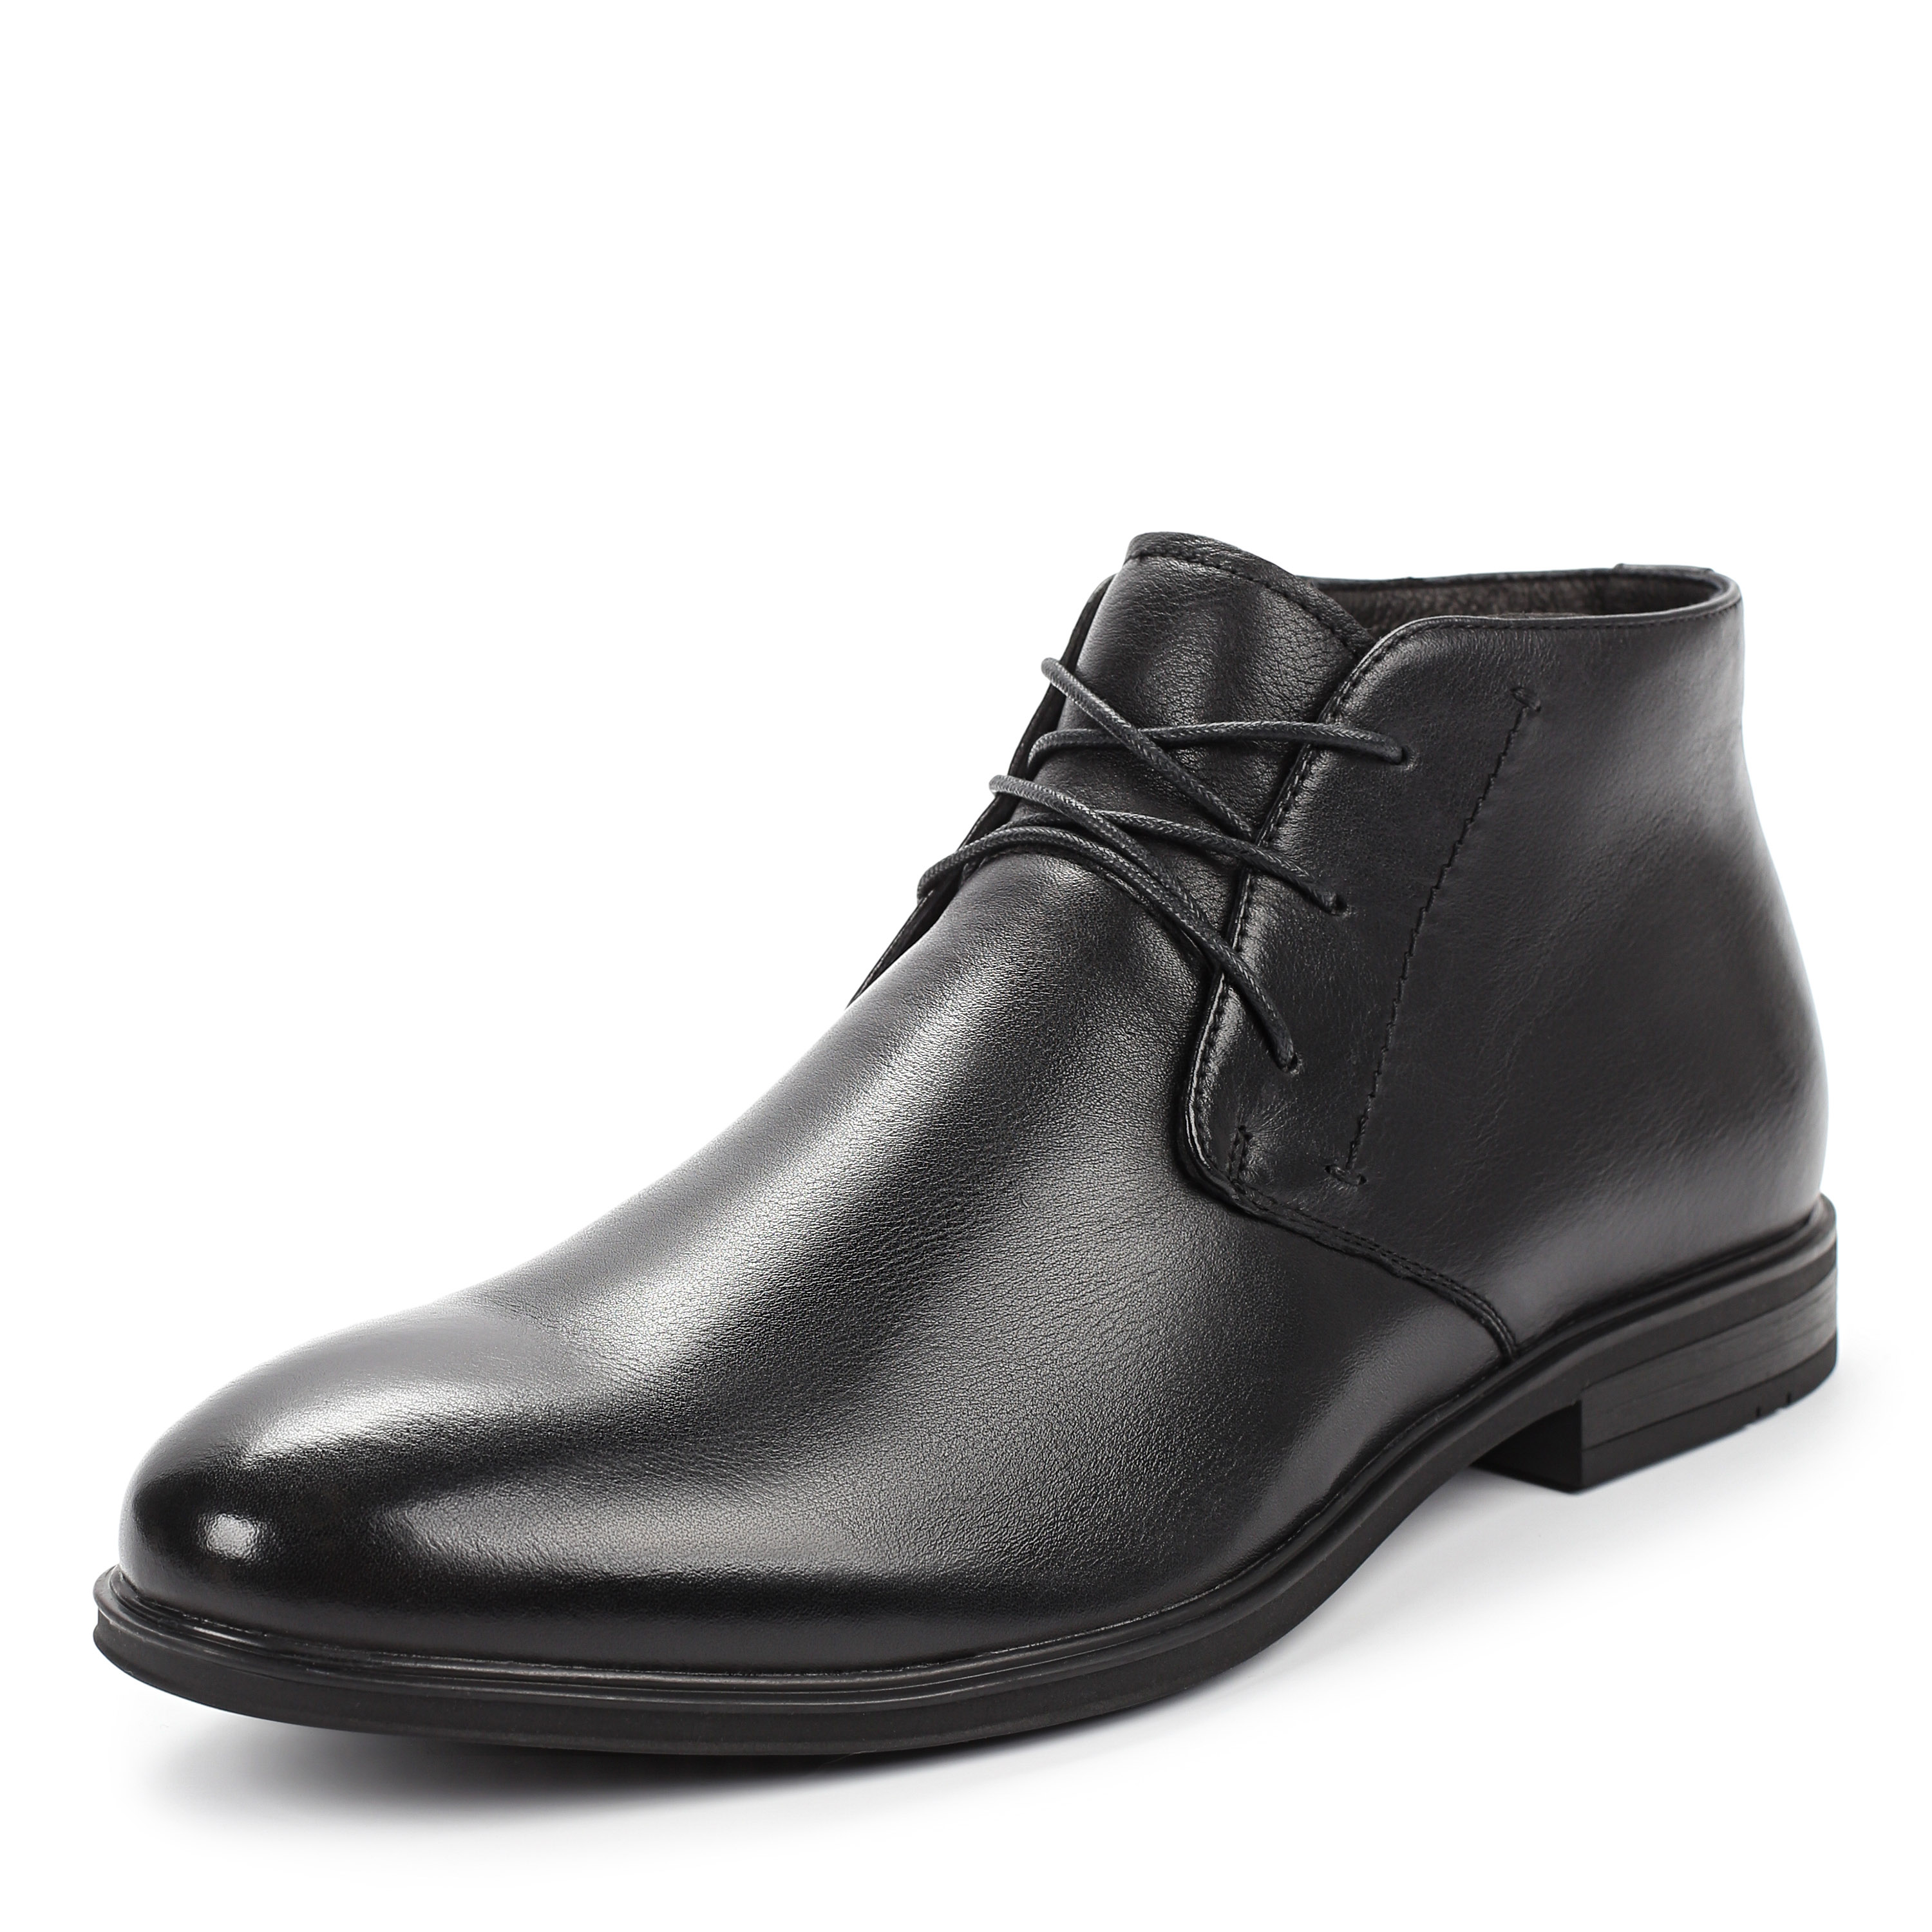 Ботинки Thomas Munz 073-002D-2102 073-002D-2102, цвет черный, размер 45 дерби - фото 2